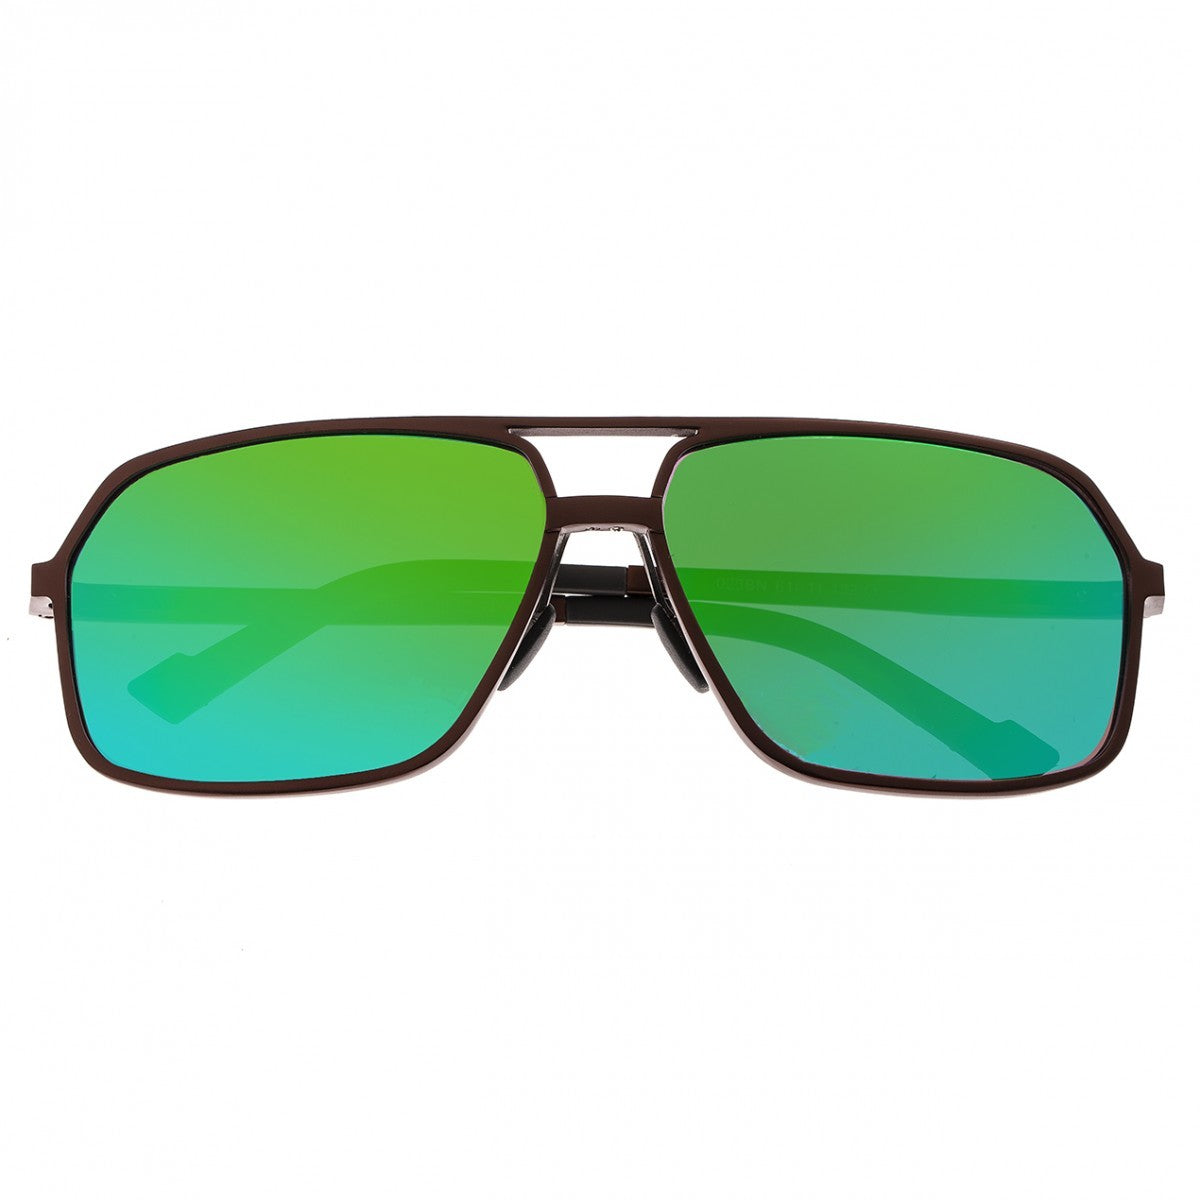 Breed Fornax Aluminium Polarized Sunglasses - Brown/Blue-Green - BSG023BN